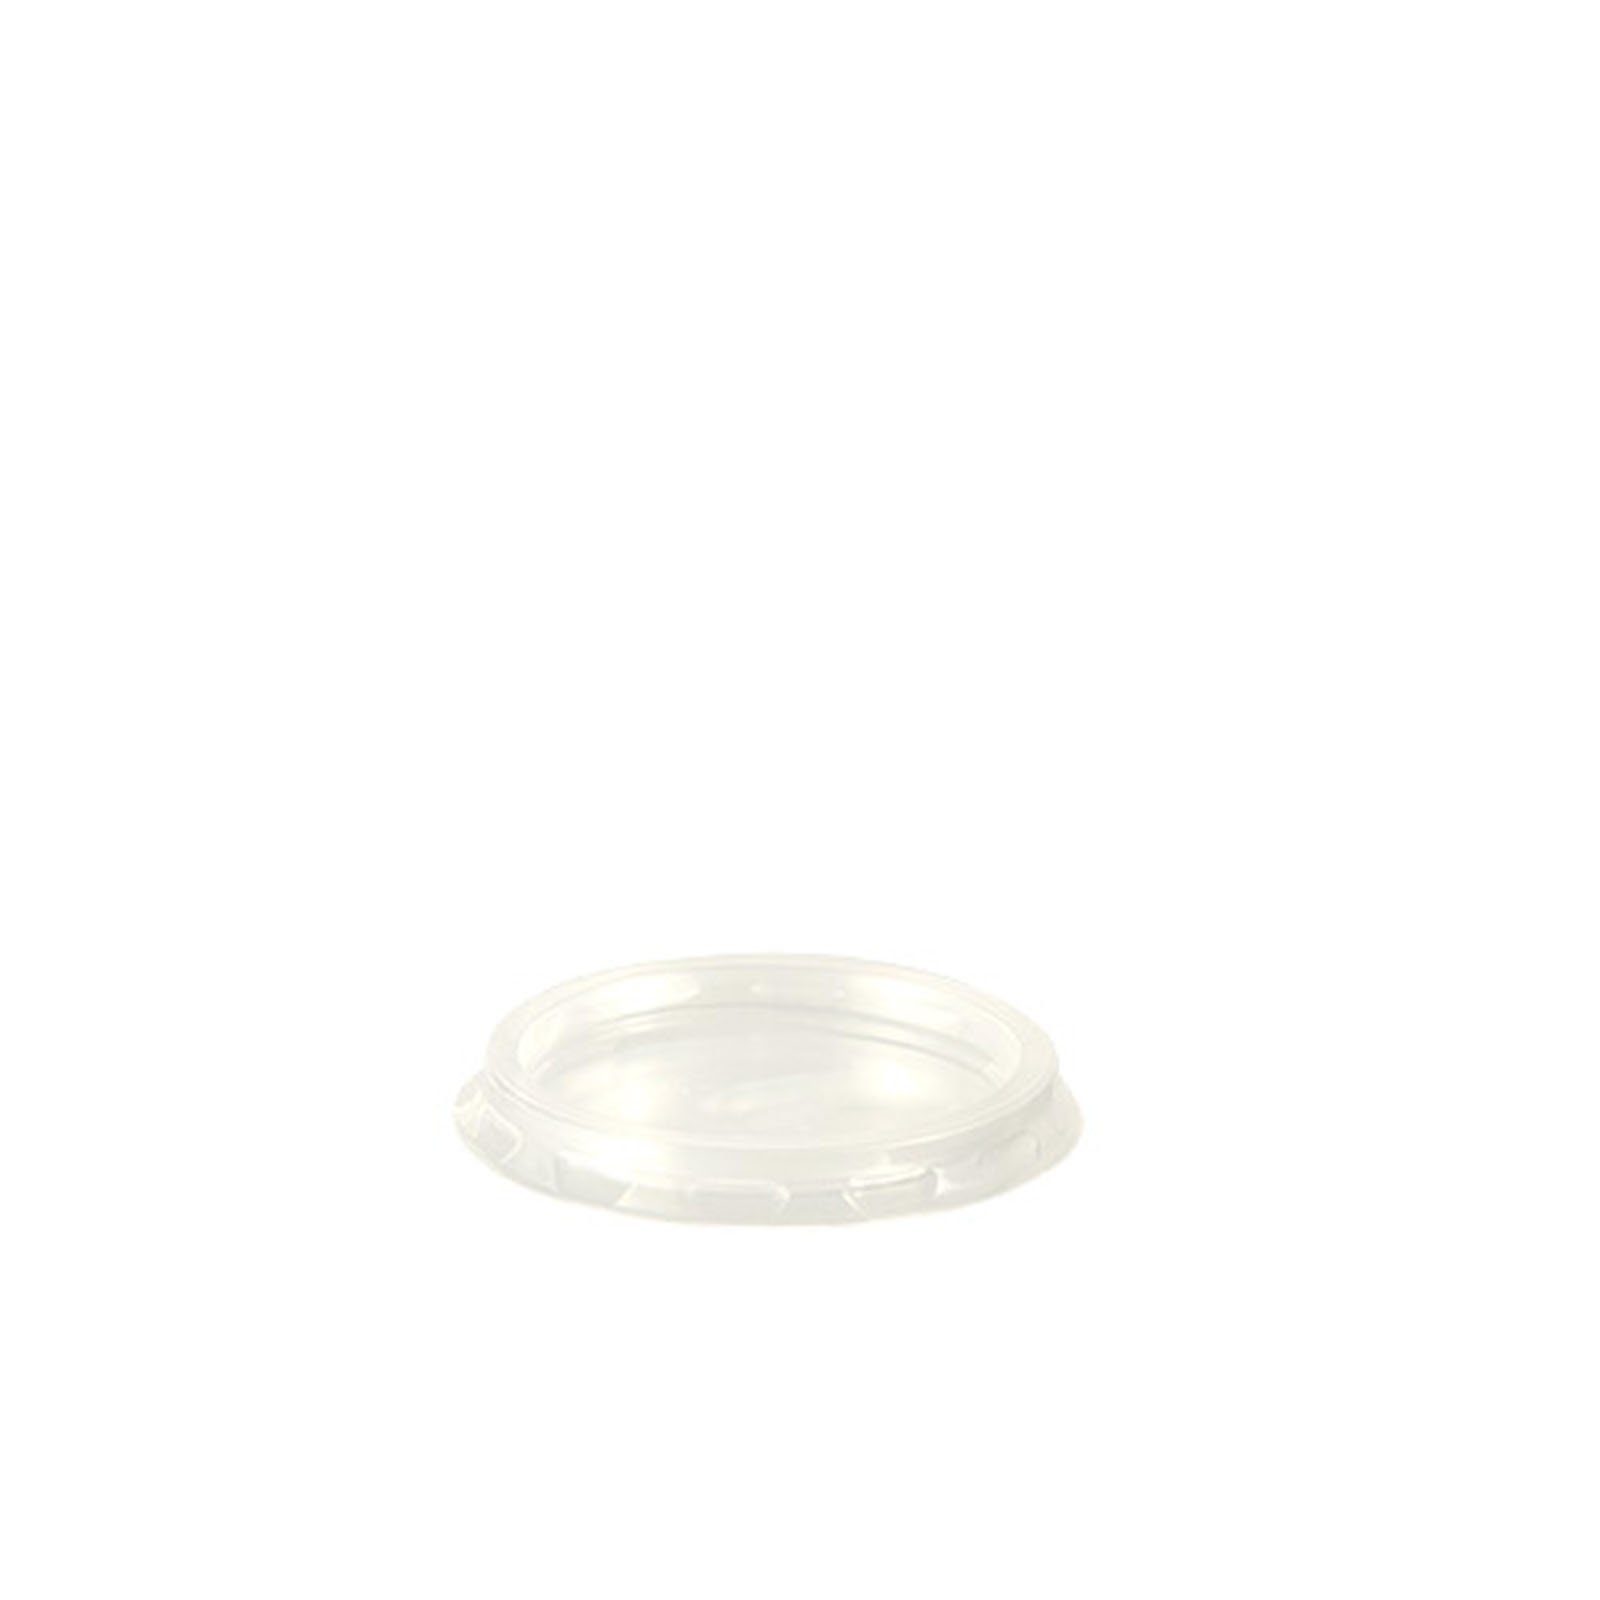 Starpak Einwegbecher 1000 Stück Deckel für Portionsbecher, PP rund Ø 4,6 cm transparent